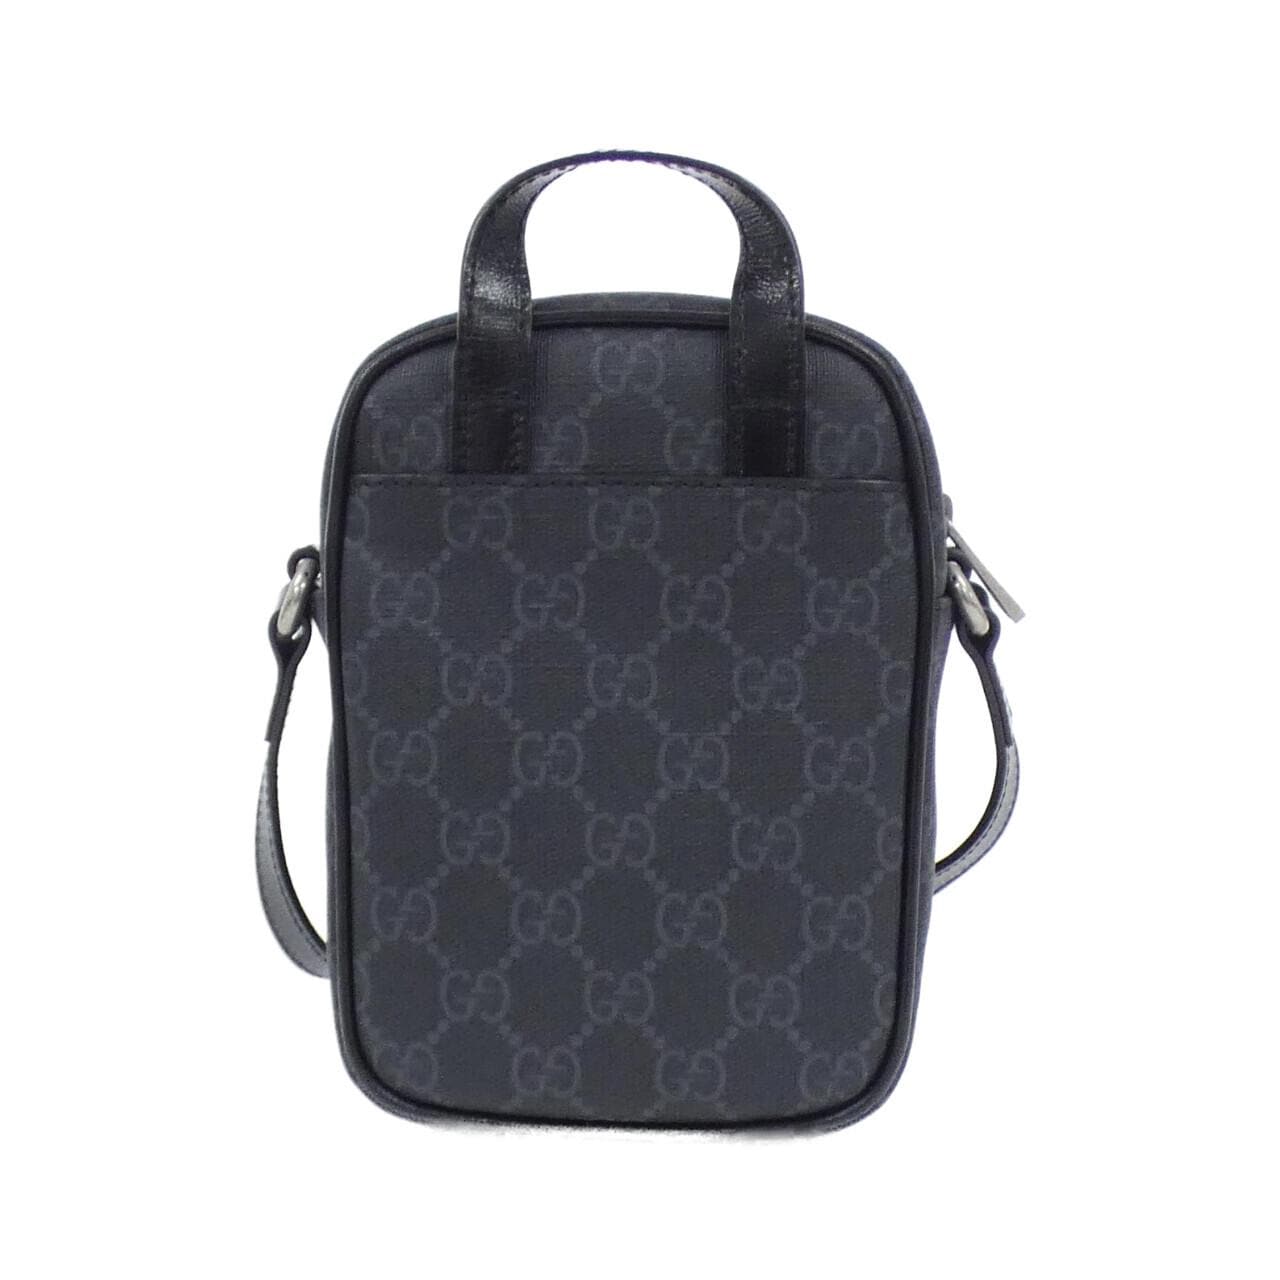 Gucci INTERLOCKING G 672952 92TCN Shoulder Bag